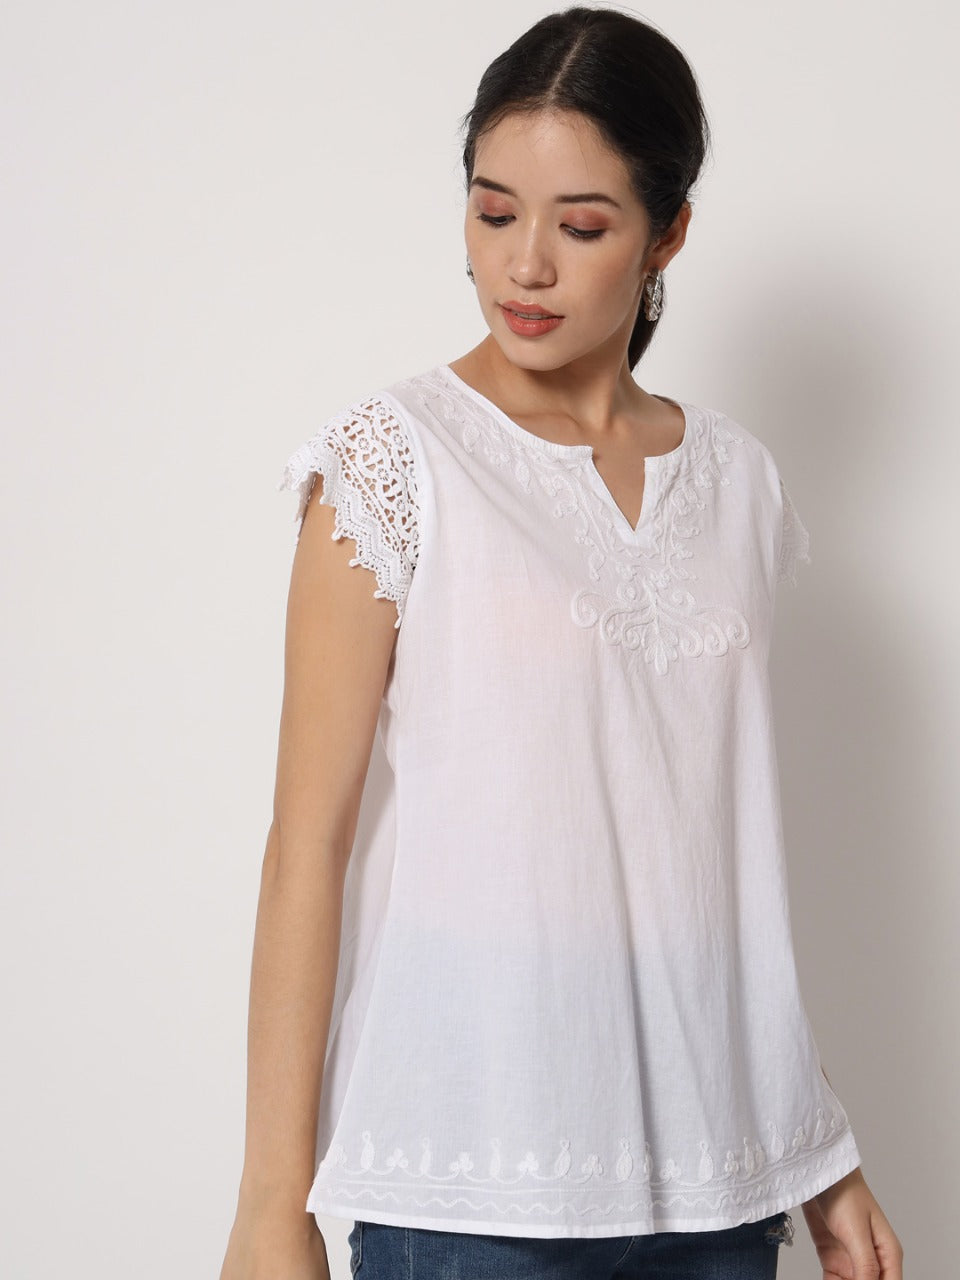 Blusa Blanca Unicolor de Dama Mangas Cortas CT020